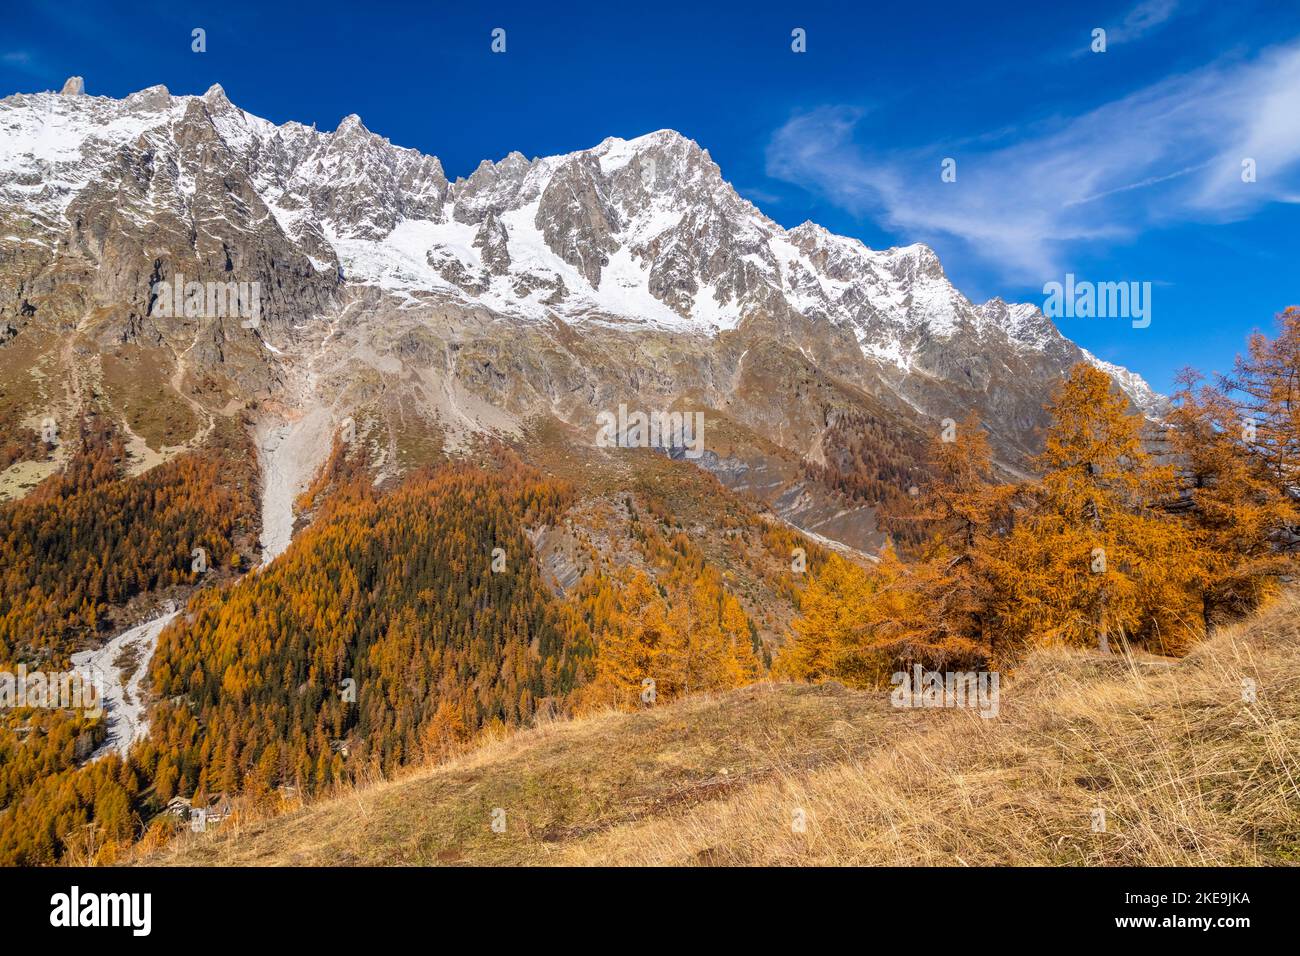 Blick auf Grandes Jorasses und das Mont Blanc-Massiv vom Weg zur Bergone Refuge im Ferret Valley im Herbst. Ferret Valley, Courmayeur, Aosta Bezirk, Stockfoto